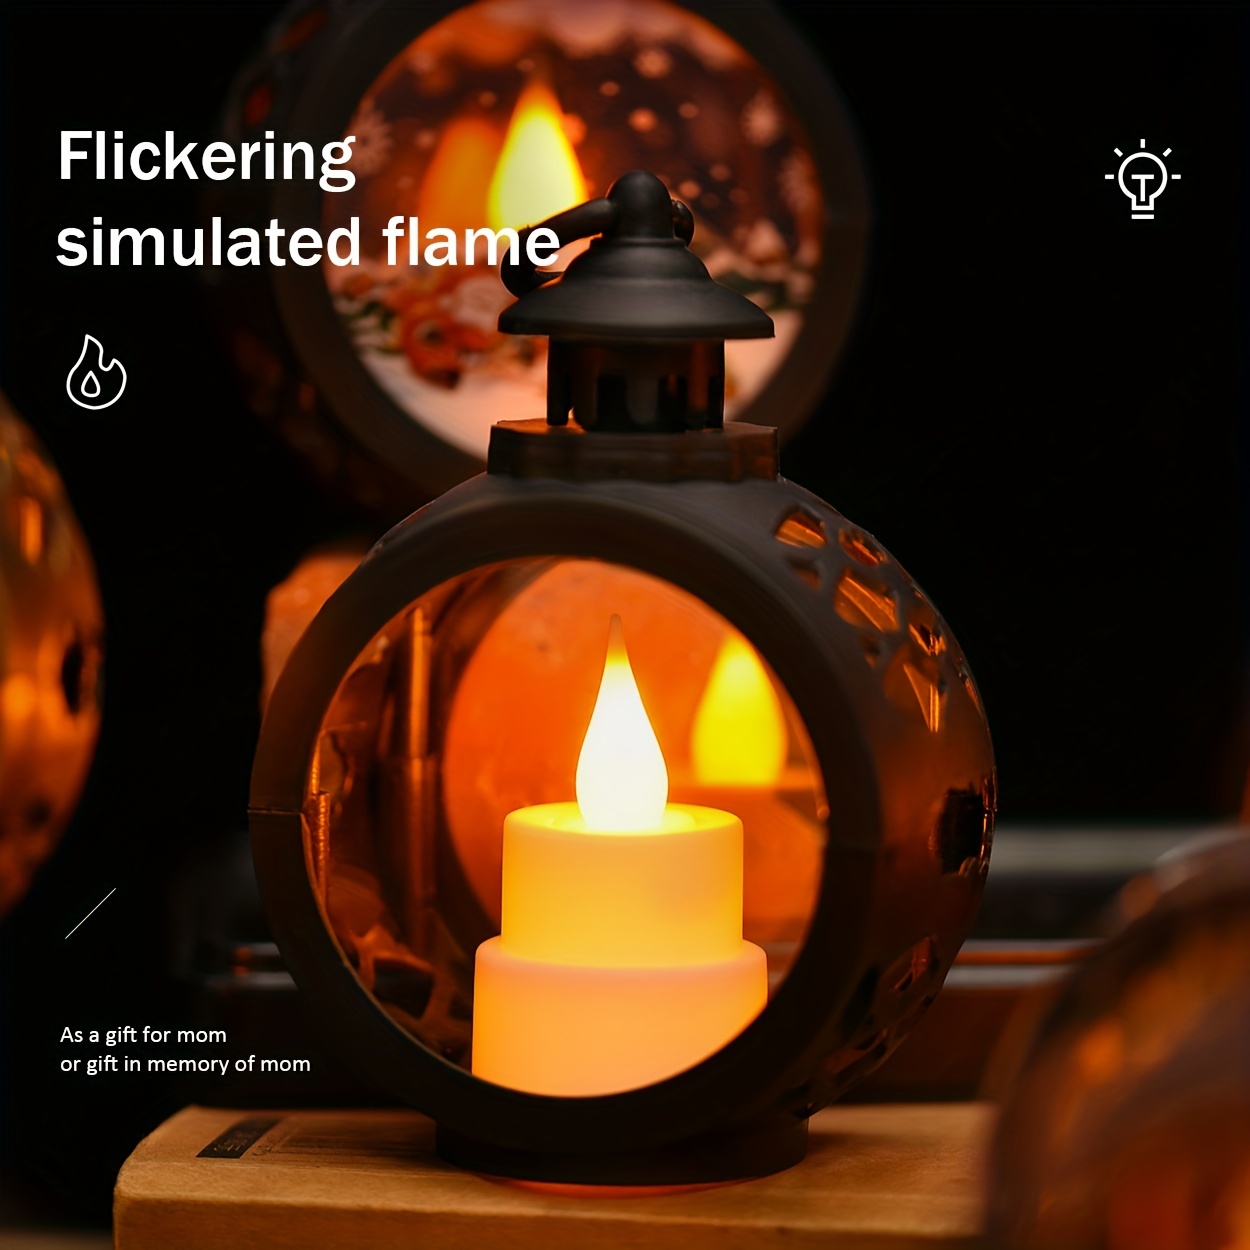 Led Mini Retro Simulation Candle Flame double Layer Square - Temu